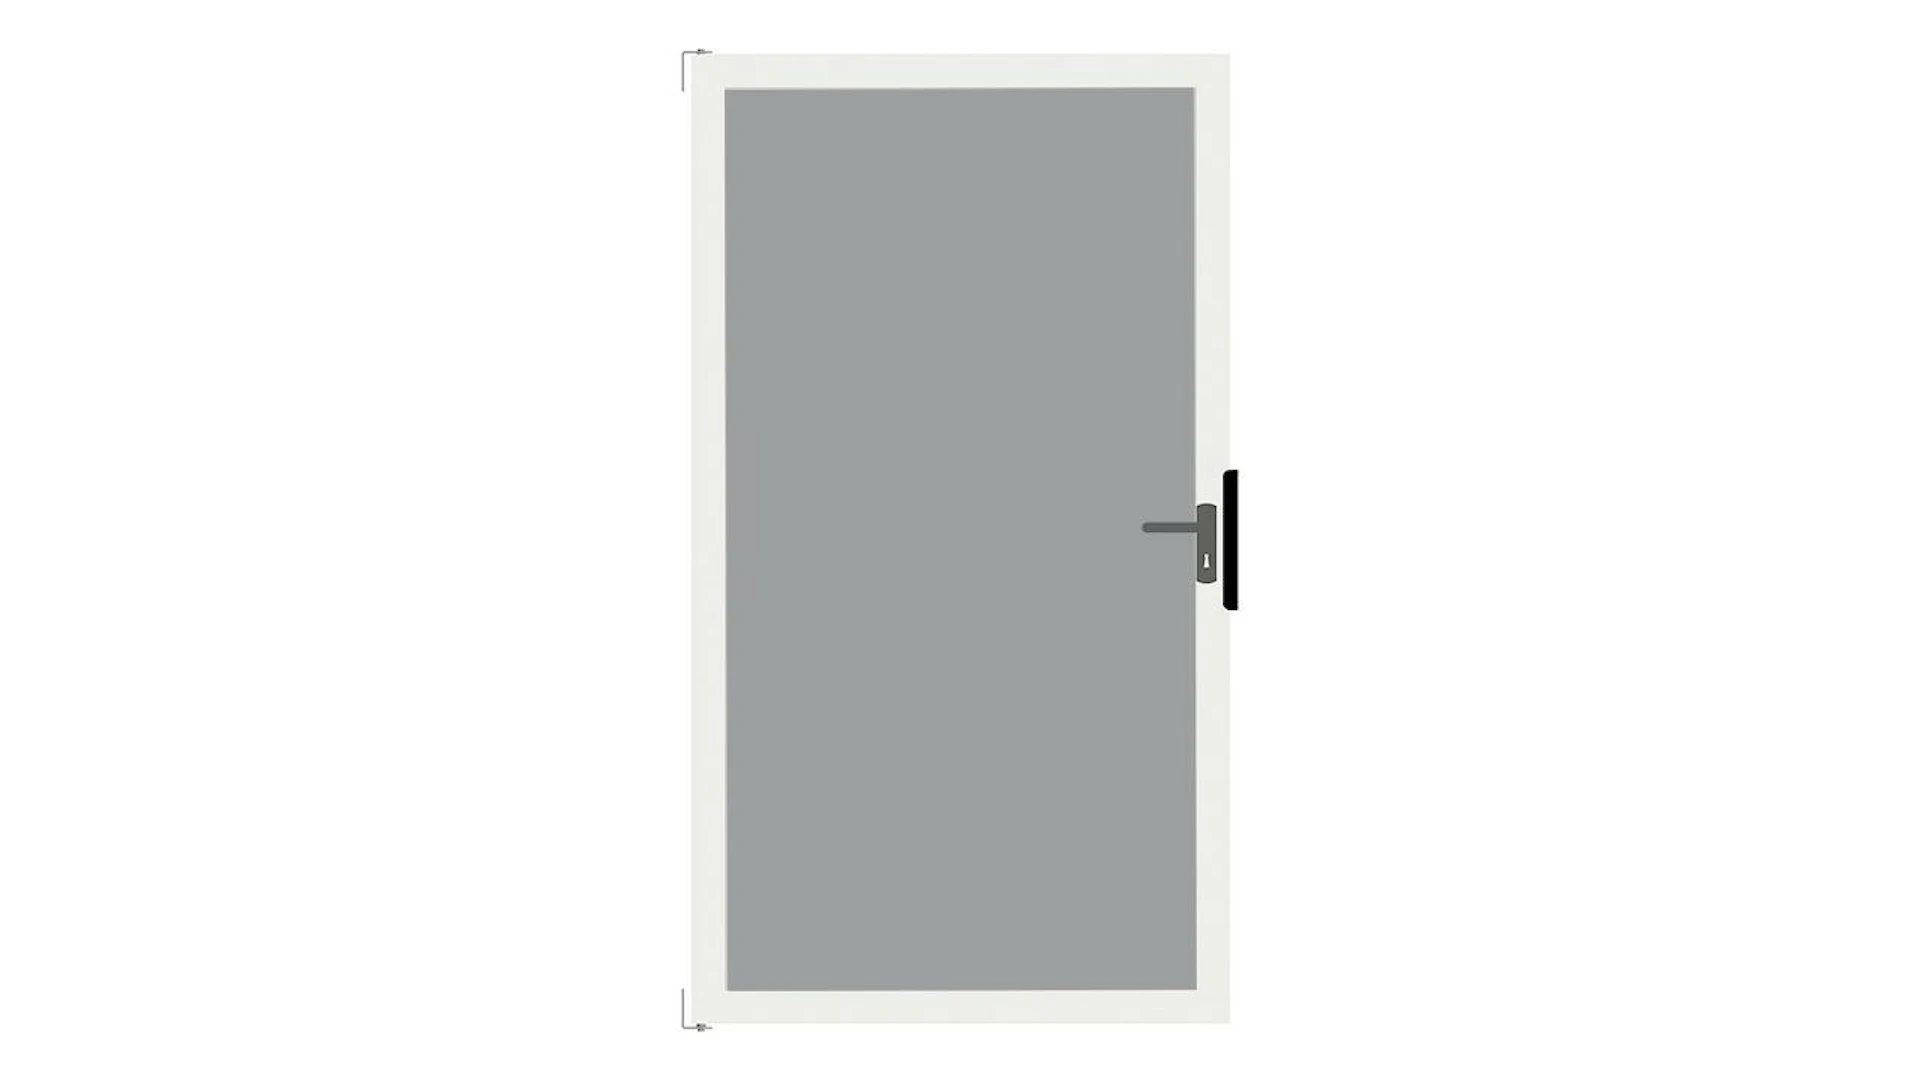 planeo Gardence Flair - Brise vue Verre Porte DIN droite Satiné avec cadre en aluminium Anthracite 100 x 180 cm